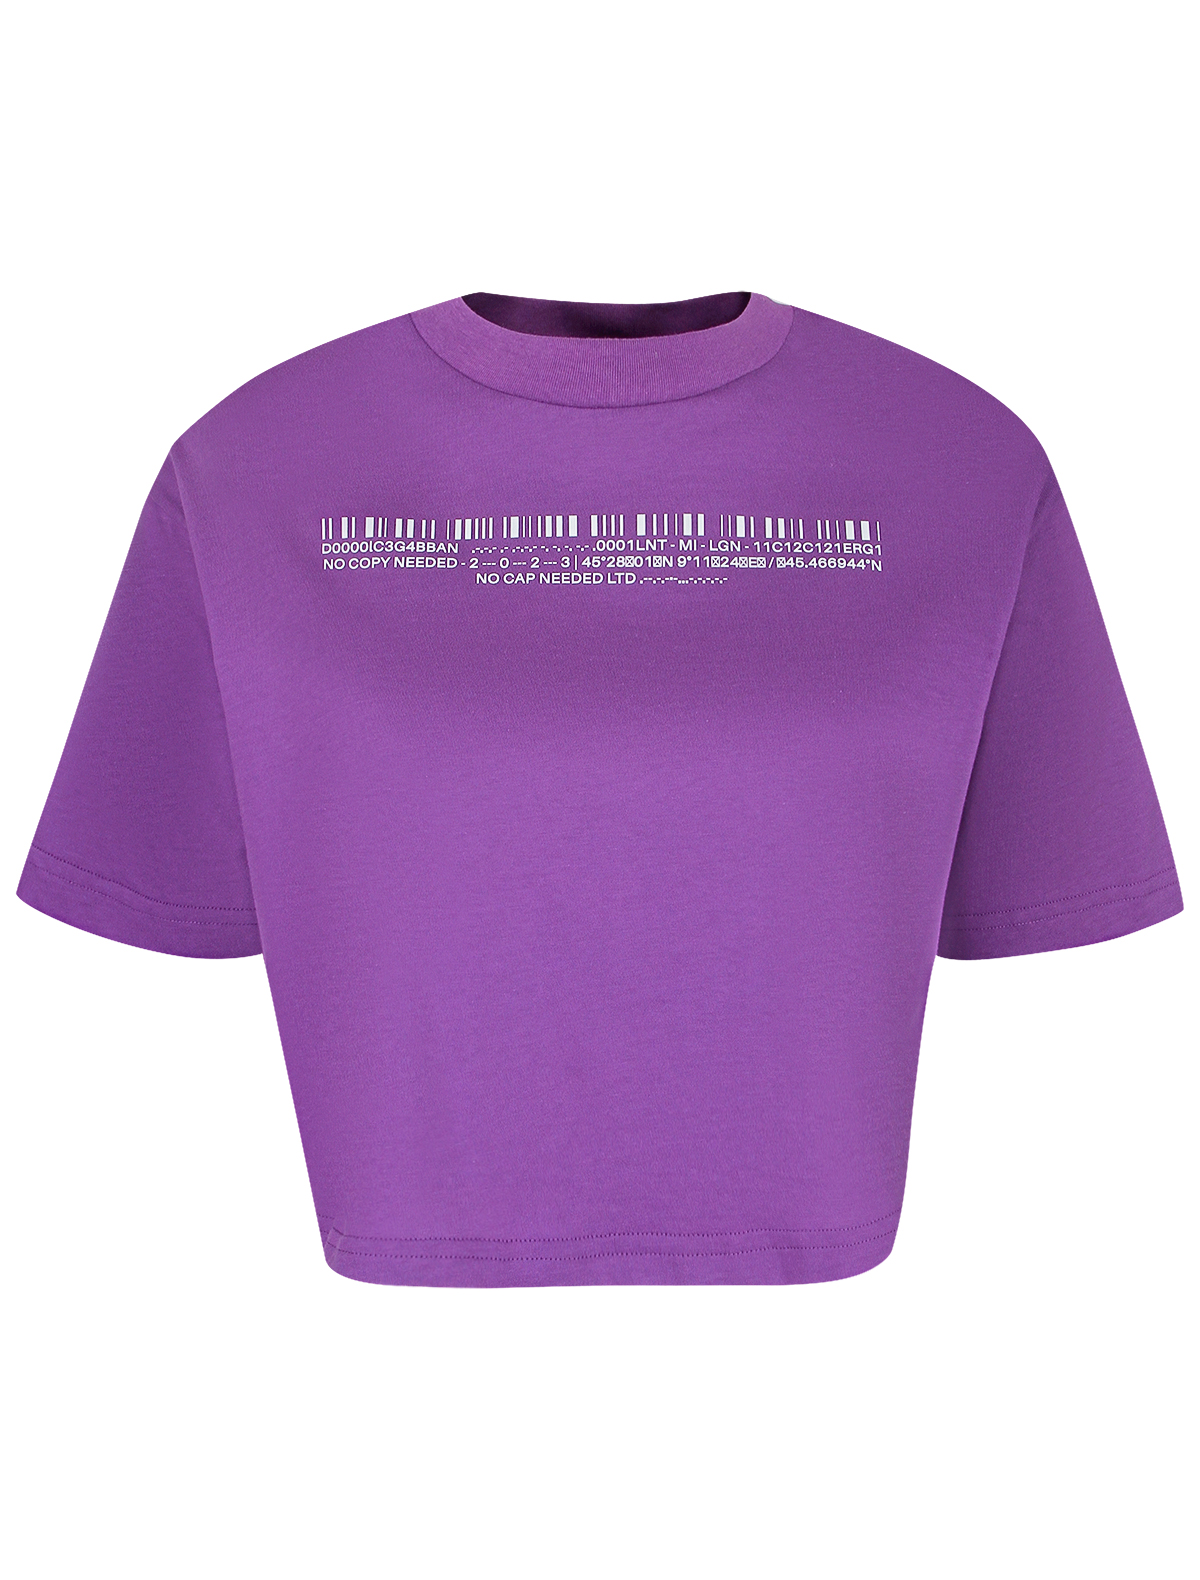 футболка dolce & gabbana для девочки, фиолетовая